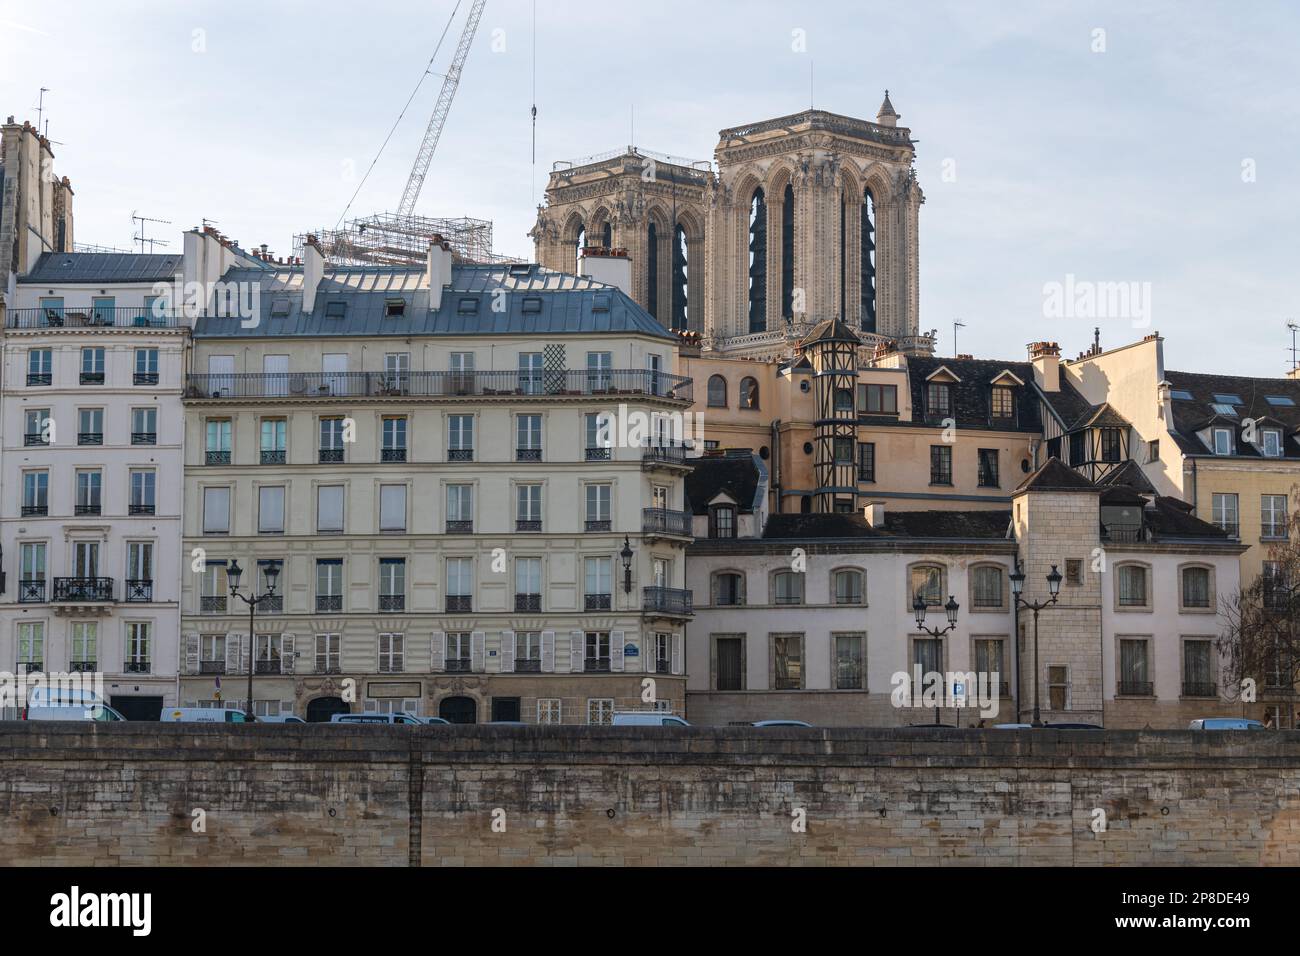 Die Zwillingstürme der Kathedrale Notre Dame werden nach dem Brand von 2019 von der seine aus wiederaufgebaut. Stockfoto